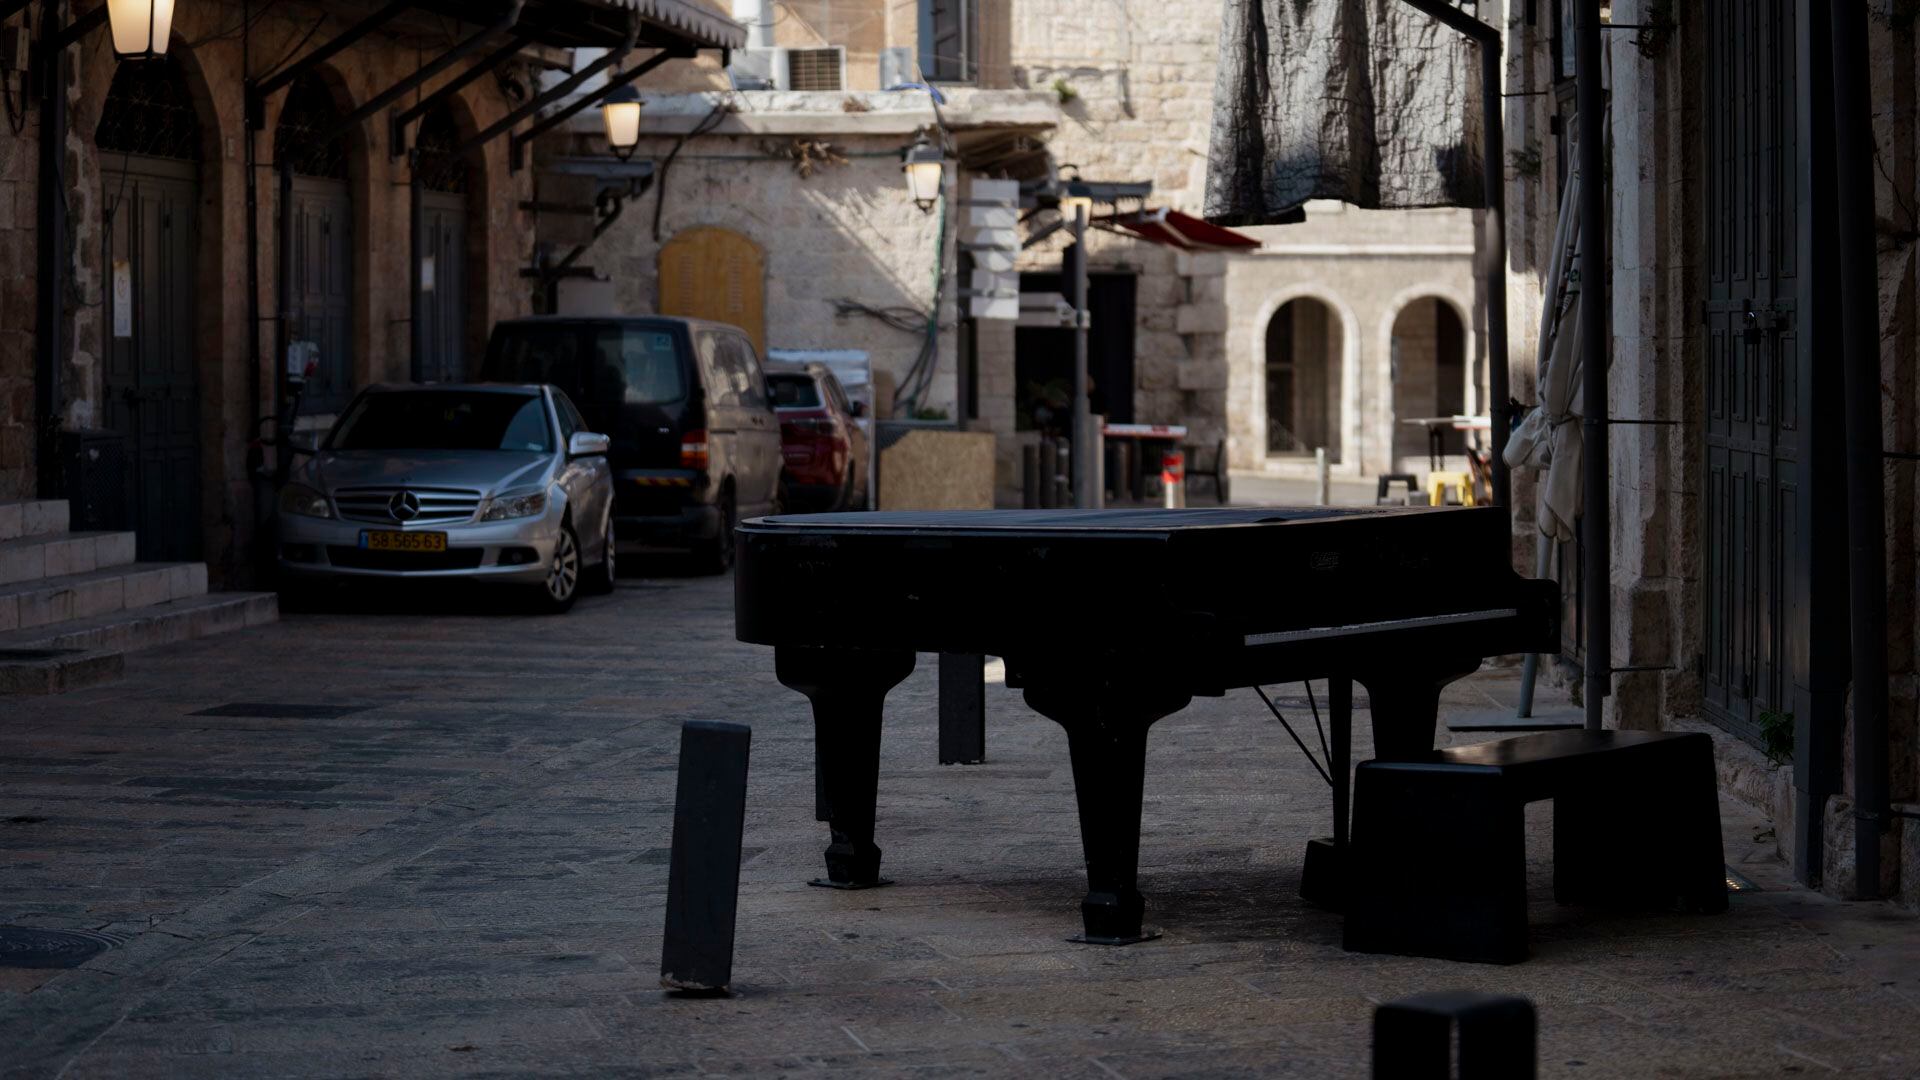 Un piano cerrado en el barrio cristiano: un hecho anómalo para los sábados en Jerusalén, cuando el clima es tibio y los turistas se apropian de la ciudad histórica